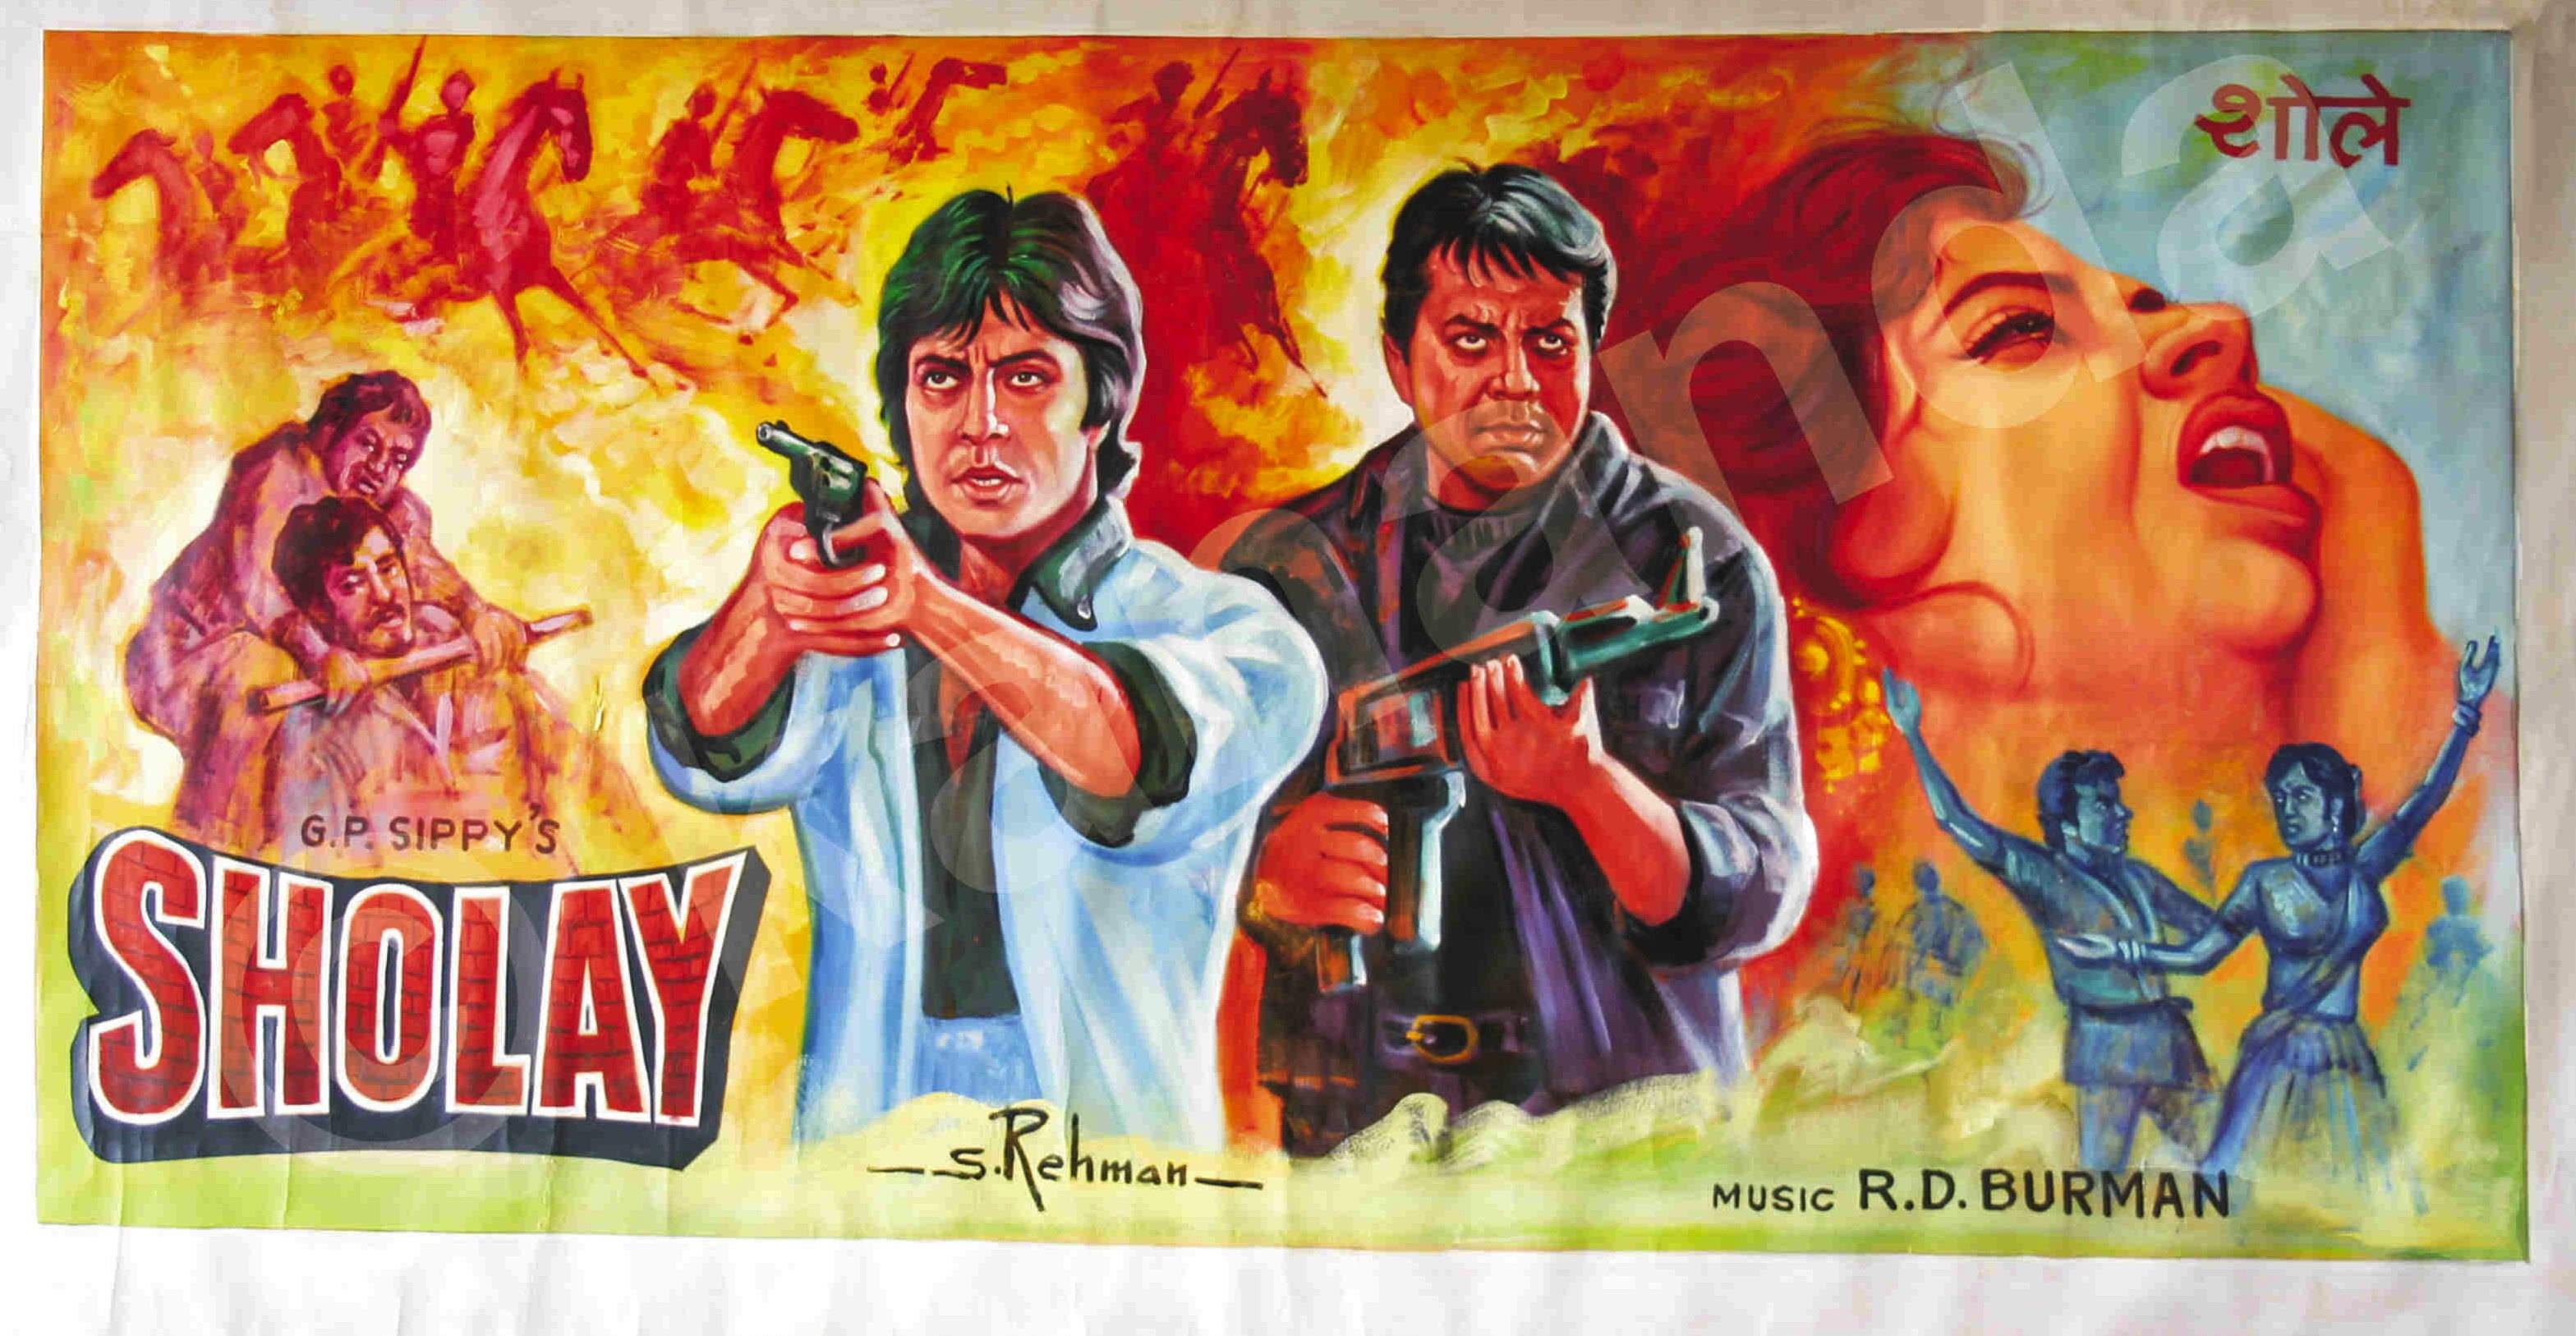 शोले - साल 1975 में रमेश सिप्पी के निर्देशन में बनी यह फिल्म भारतीय सिनेमा इतिहास की सबसे बड़ी फिल्म साबित हुई। संगीत और कहानी से लेकर स्टार-कास्टिंग तक सब कुछ बहुत ही बेहतरीन तरीके से फिल्माया गया है। देश – विदेशो में इस फिल्म को चाहने वालो की संख्या करोड़ों में है।